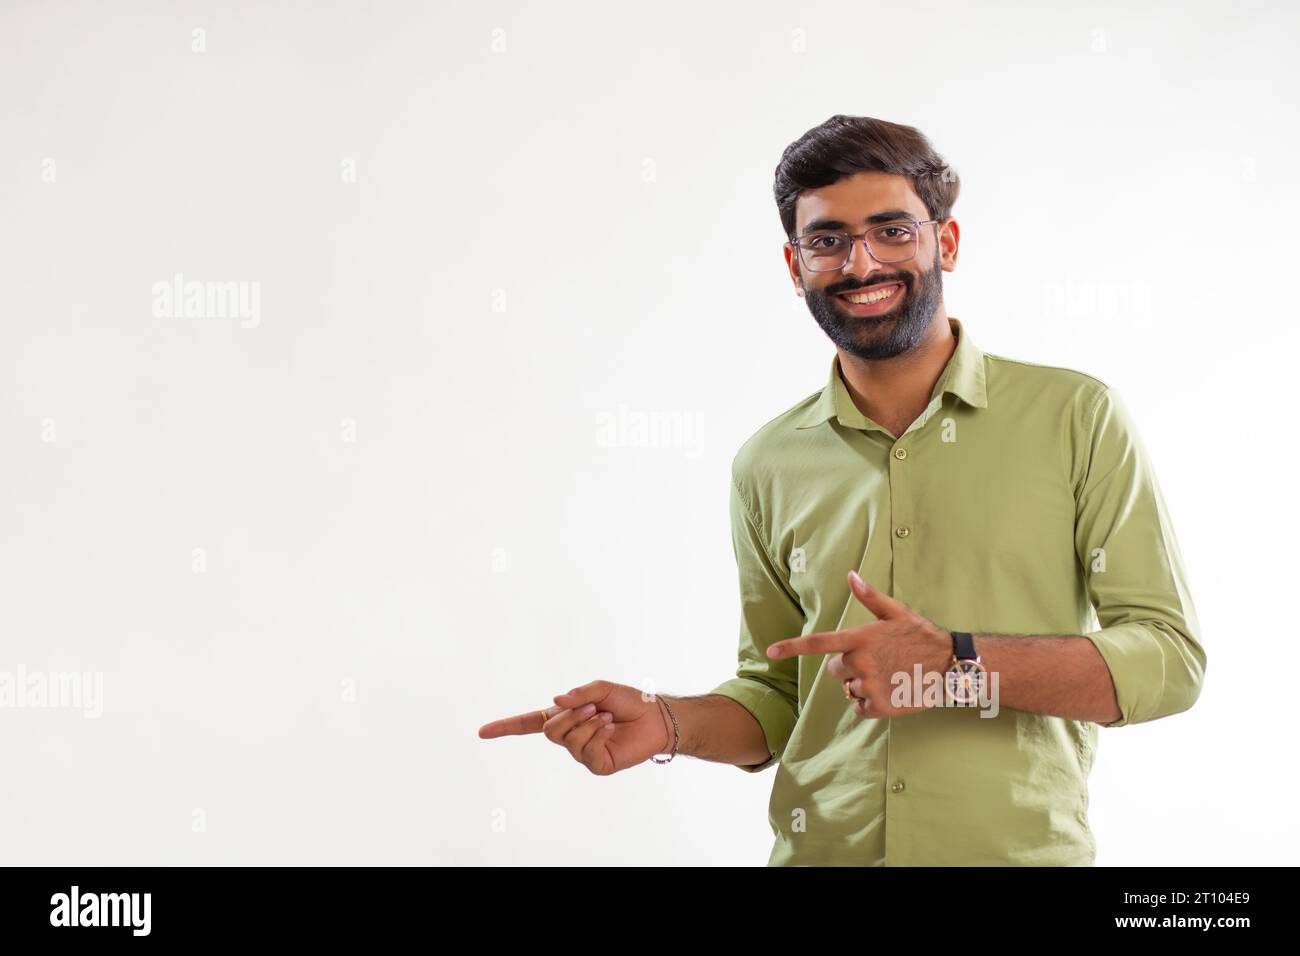 Porträt eines fröhlichen jungen Mannes, der seitwärts zeigt, während er vor weißem Hintergrund steht Stockfoto